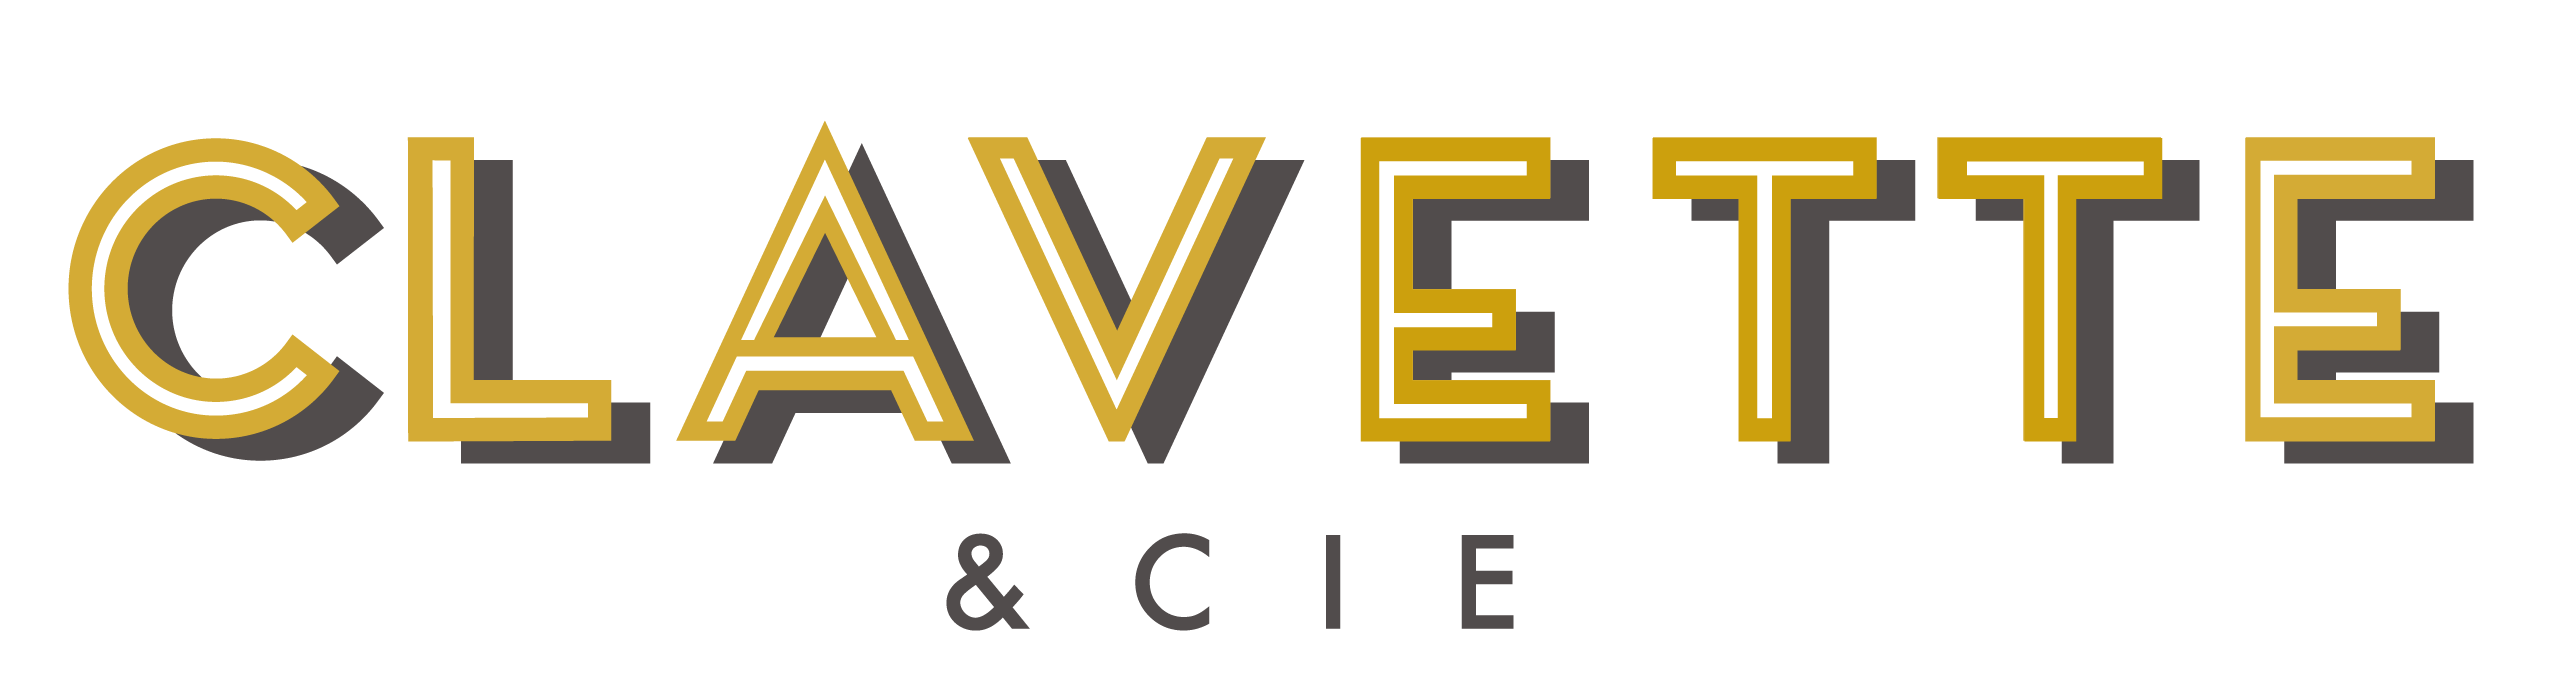 FINAL-CLAVETTE-CIE-logo-04-1.png